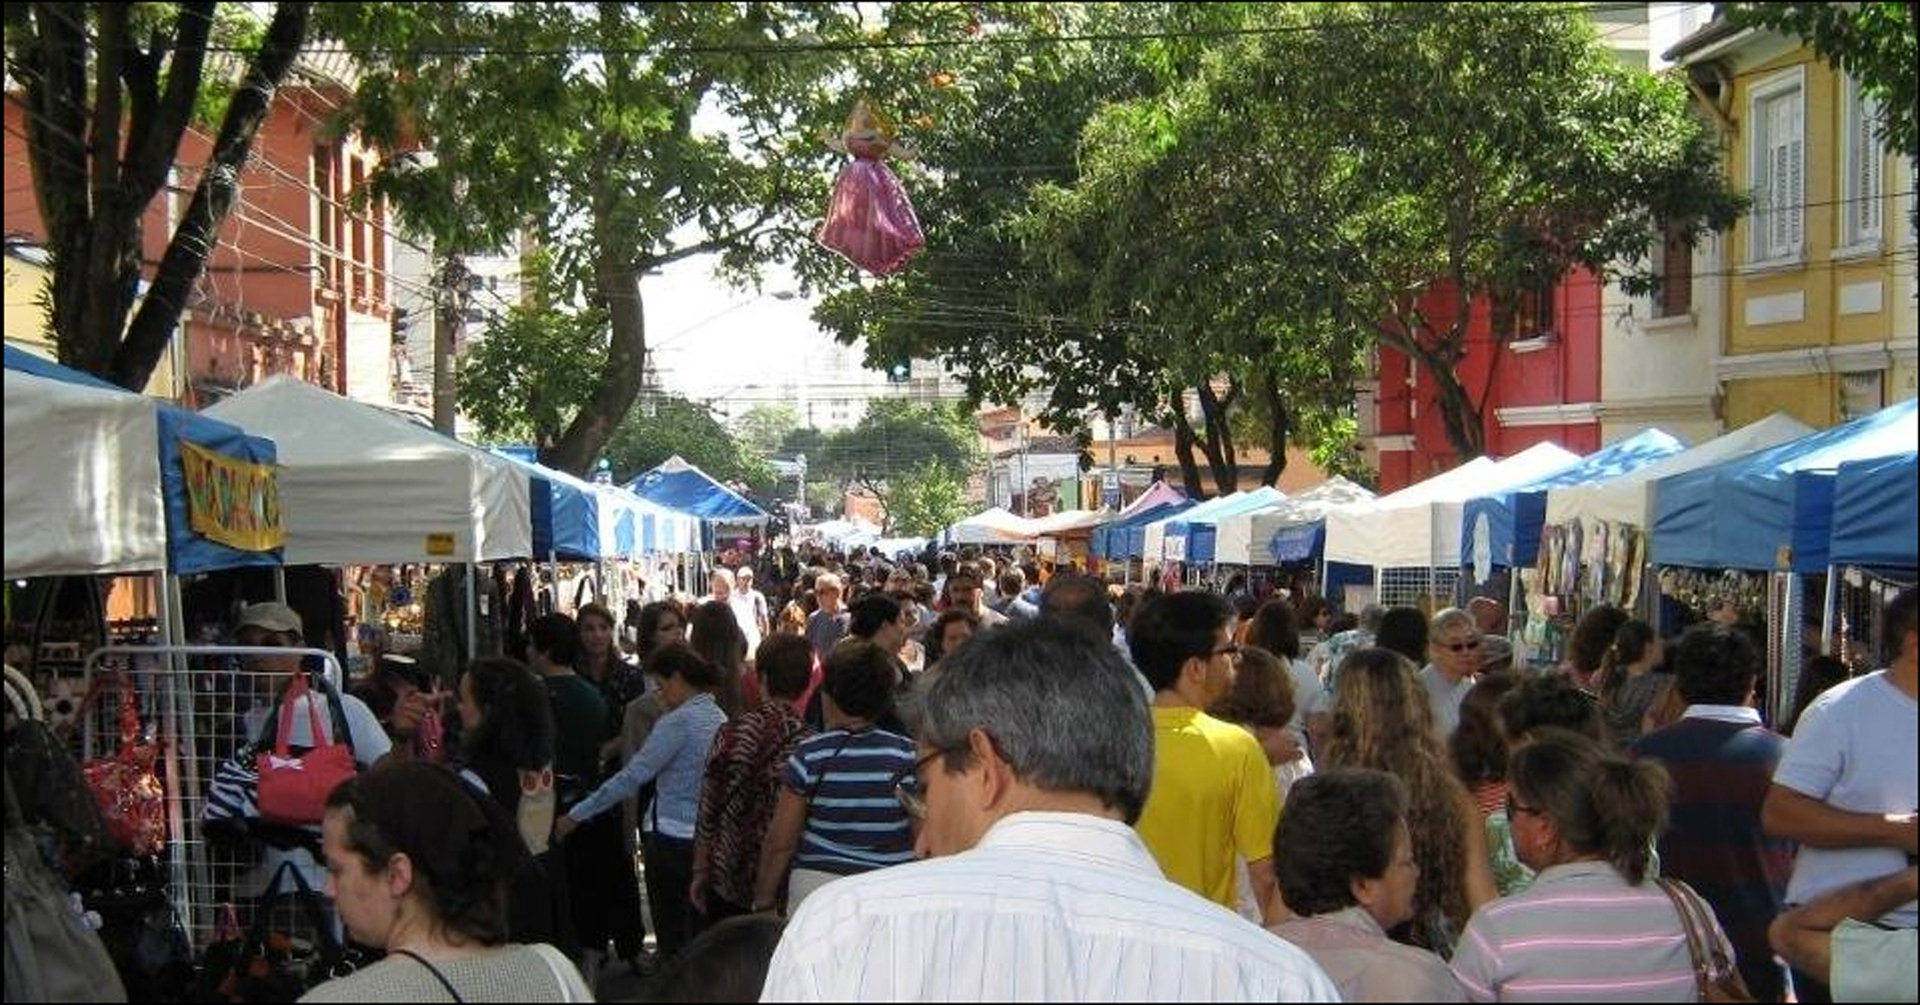 Feira Mística - Fair in São Paulo